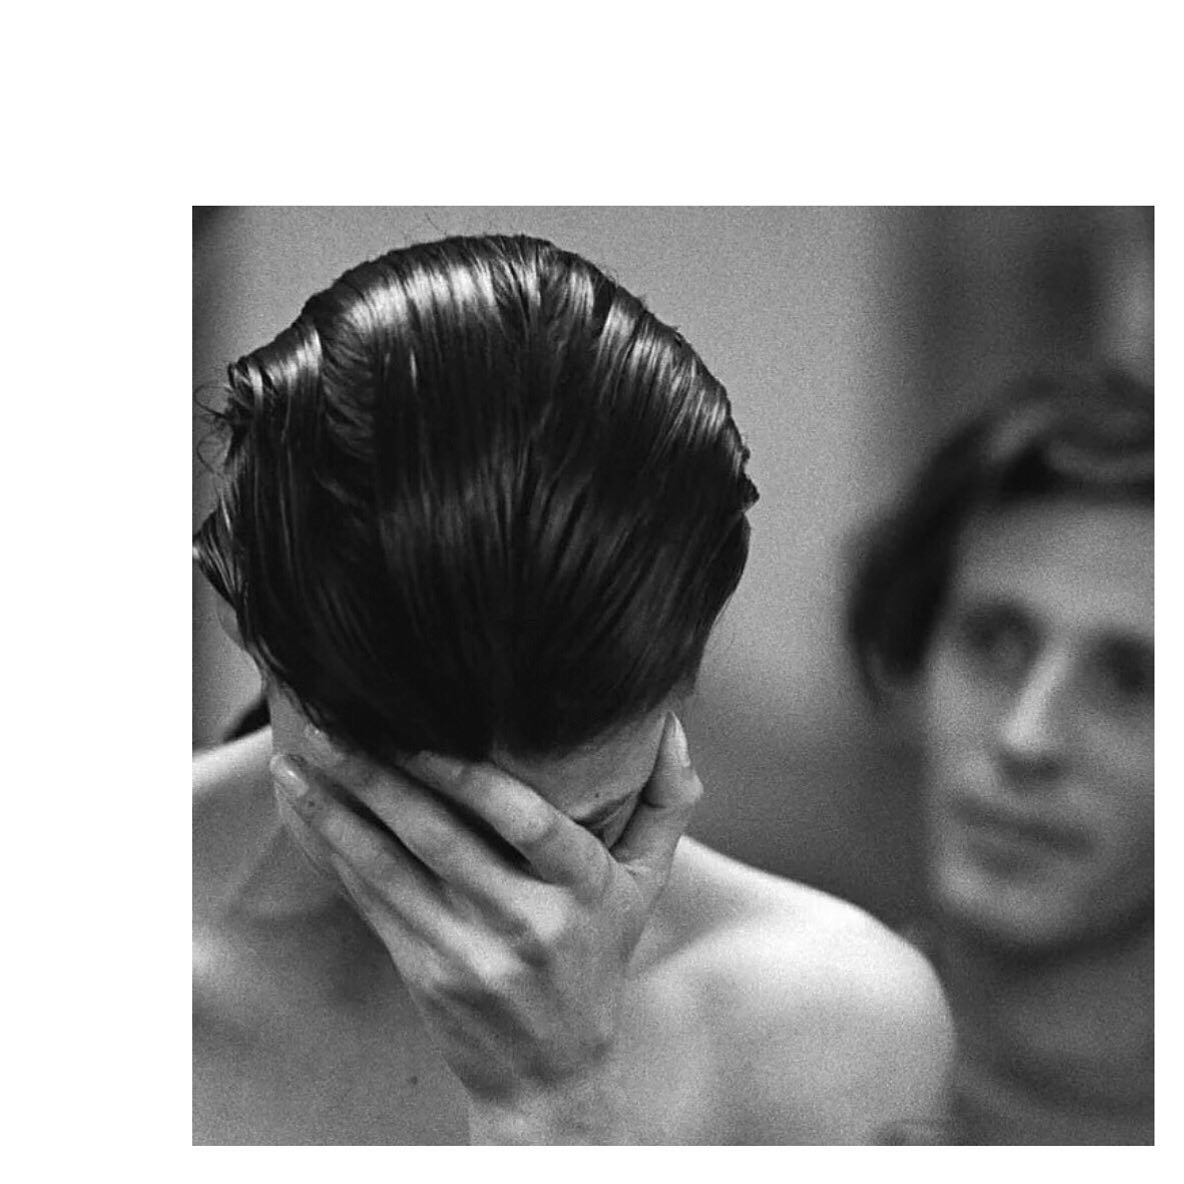 Julien d’Ys cuts @lindaevangelista’s hair in 1988, photographed by Peter LindberghRegram @pechuga_vintage